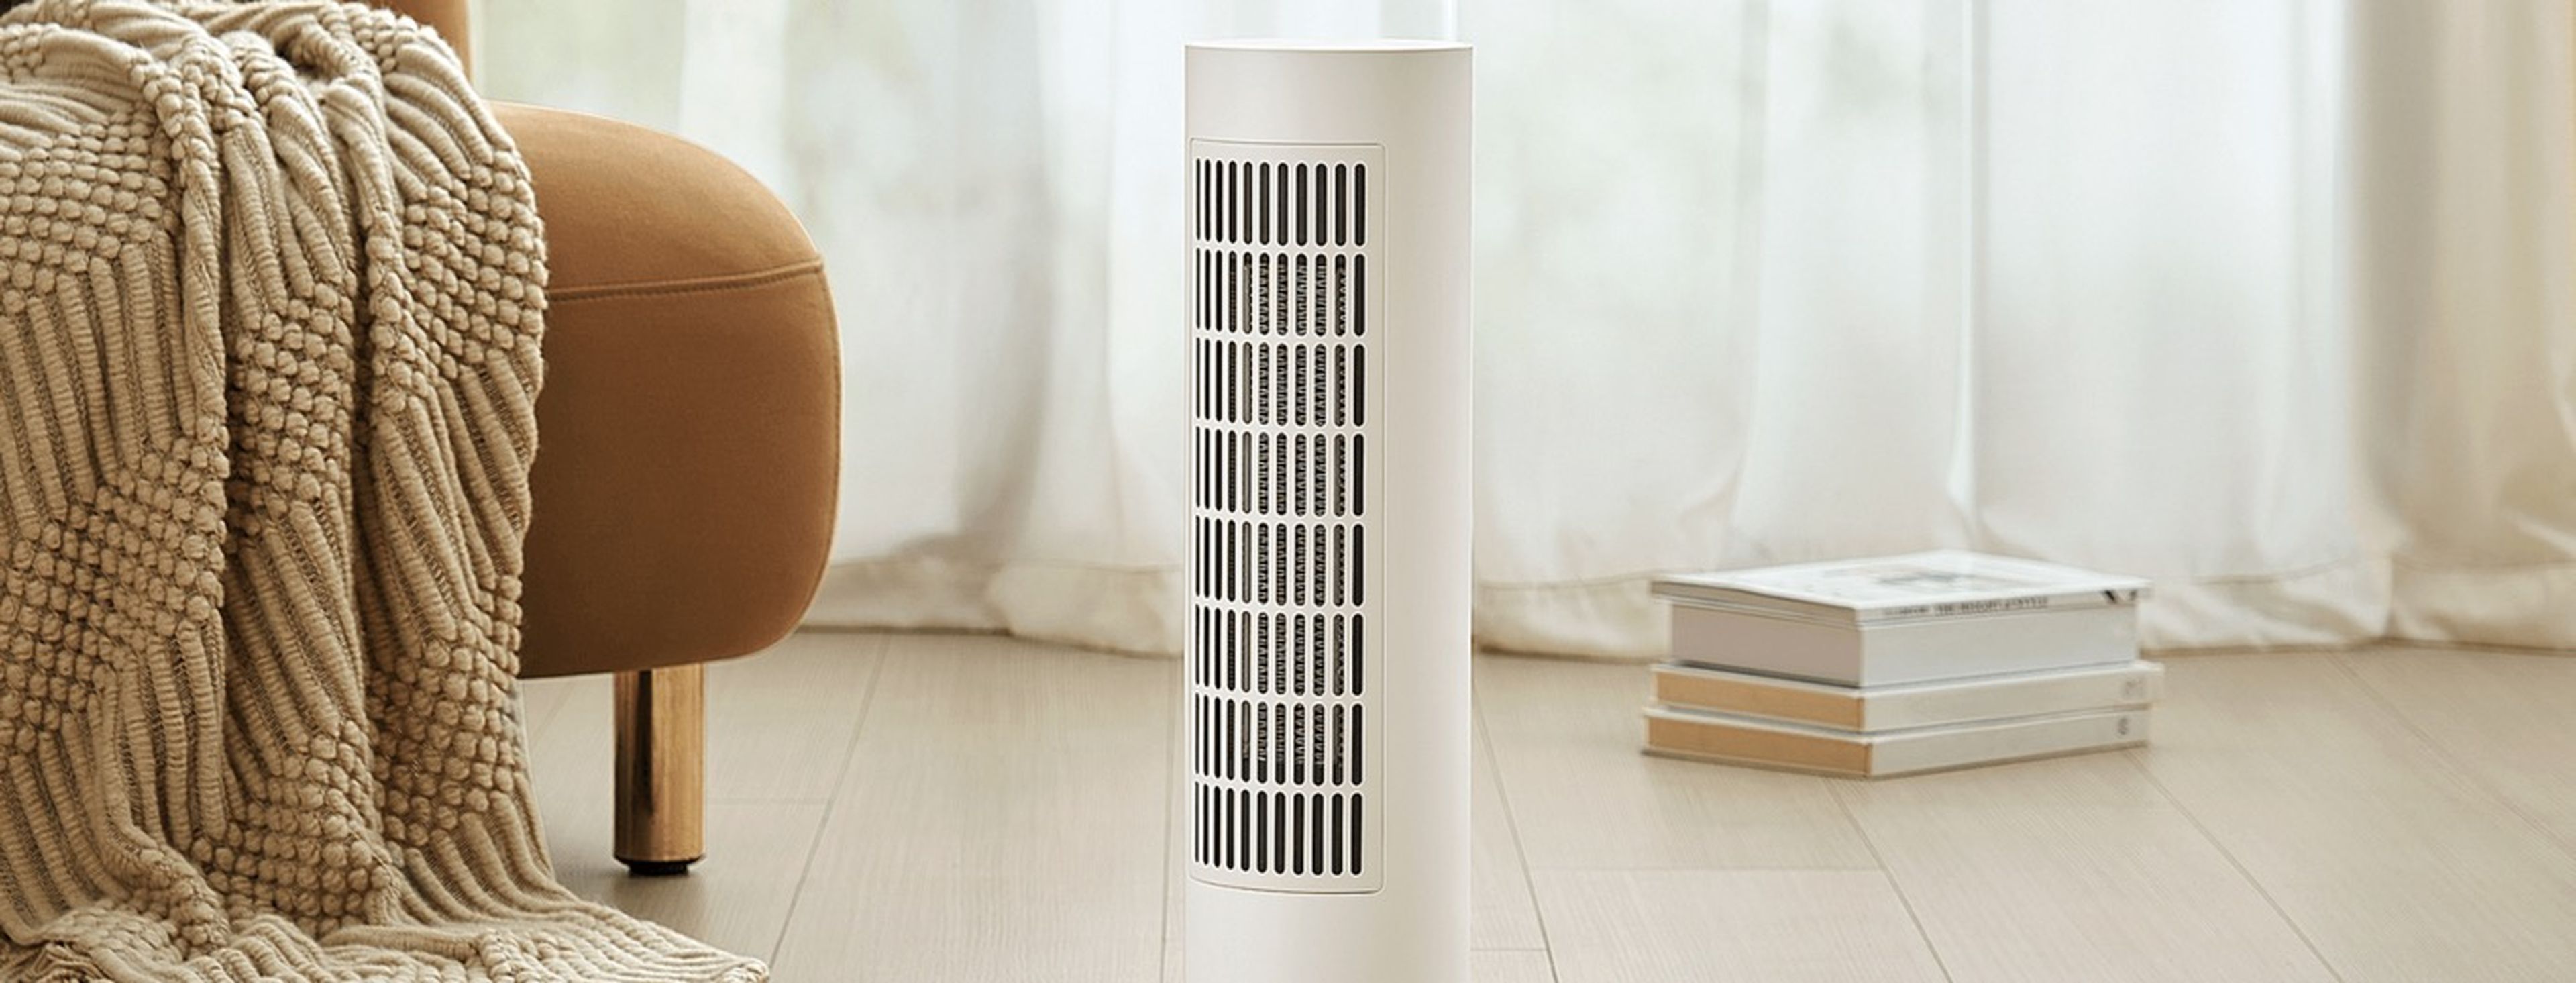 xiaomi smart tower heater